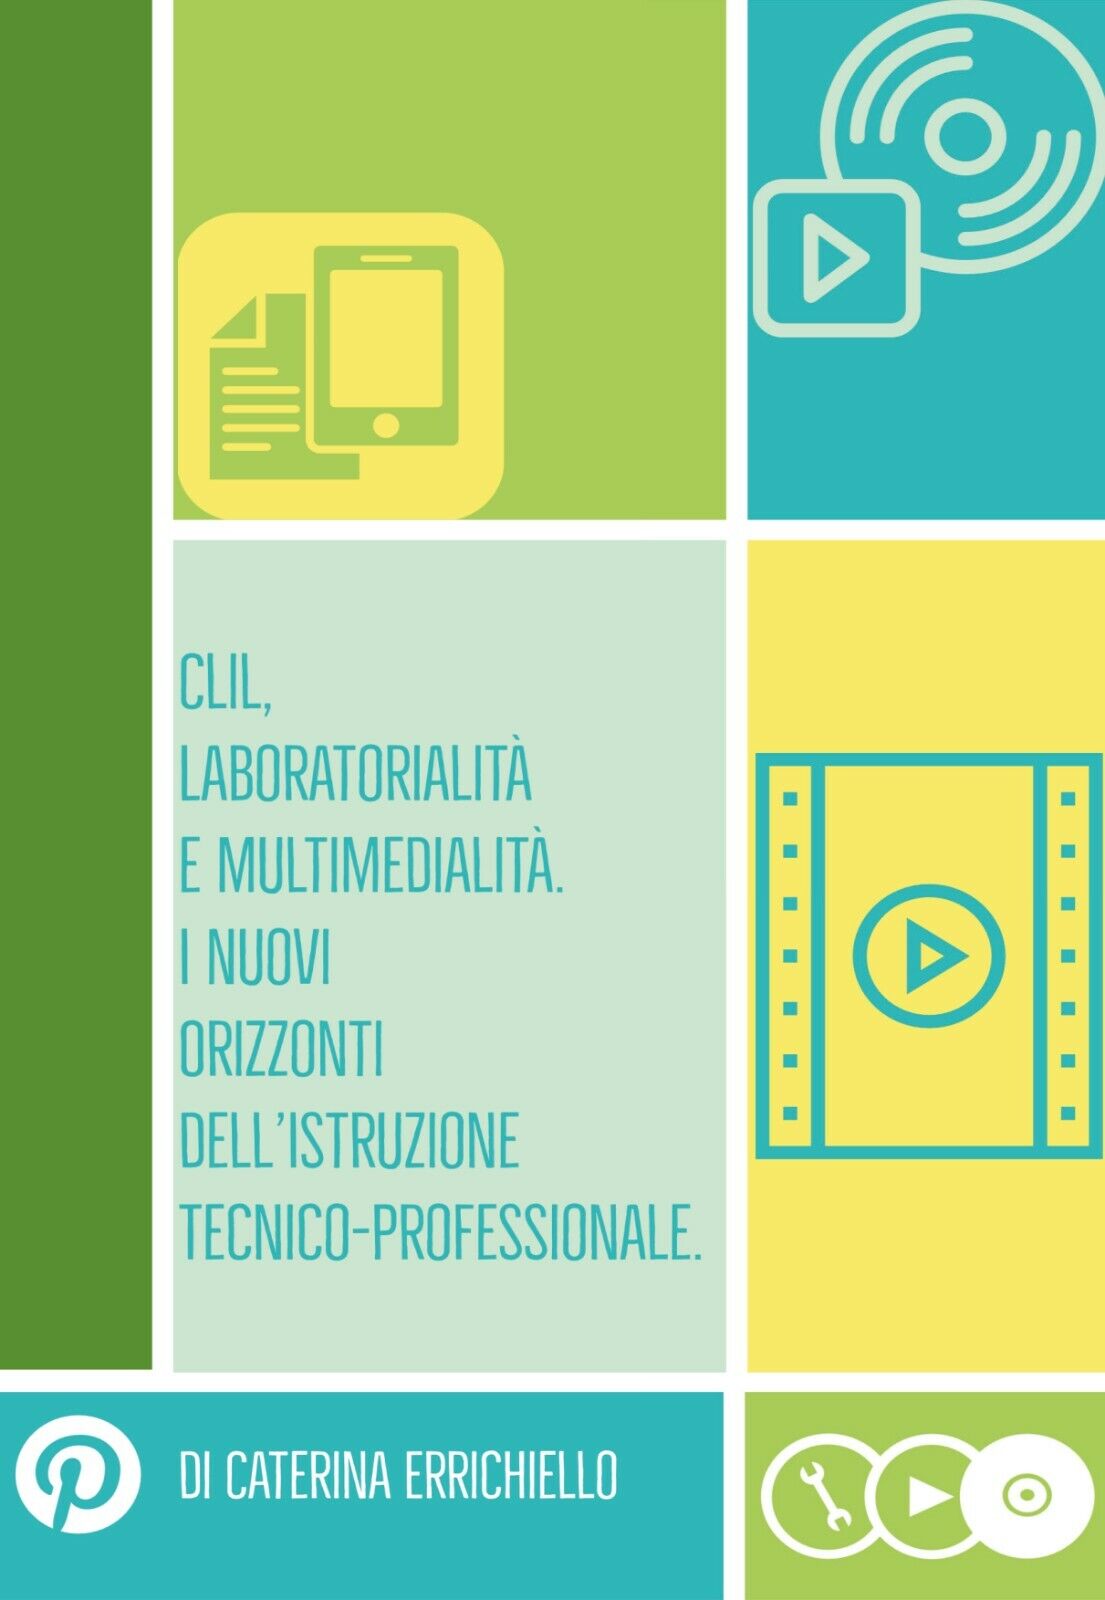 Clil, laboratorialit? e multimedialit? di Caterina Errichiello, 2020, Youcanprin